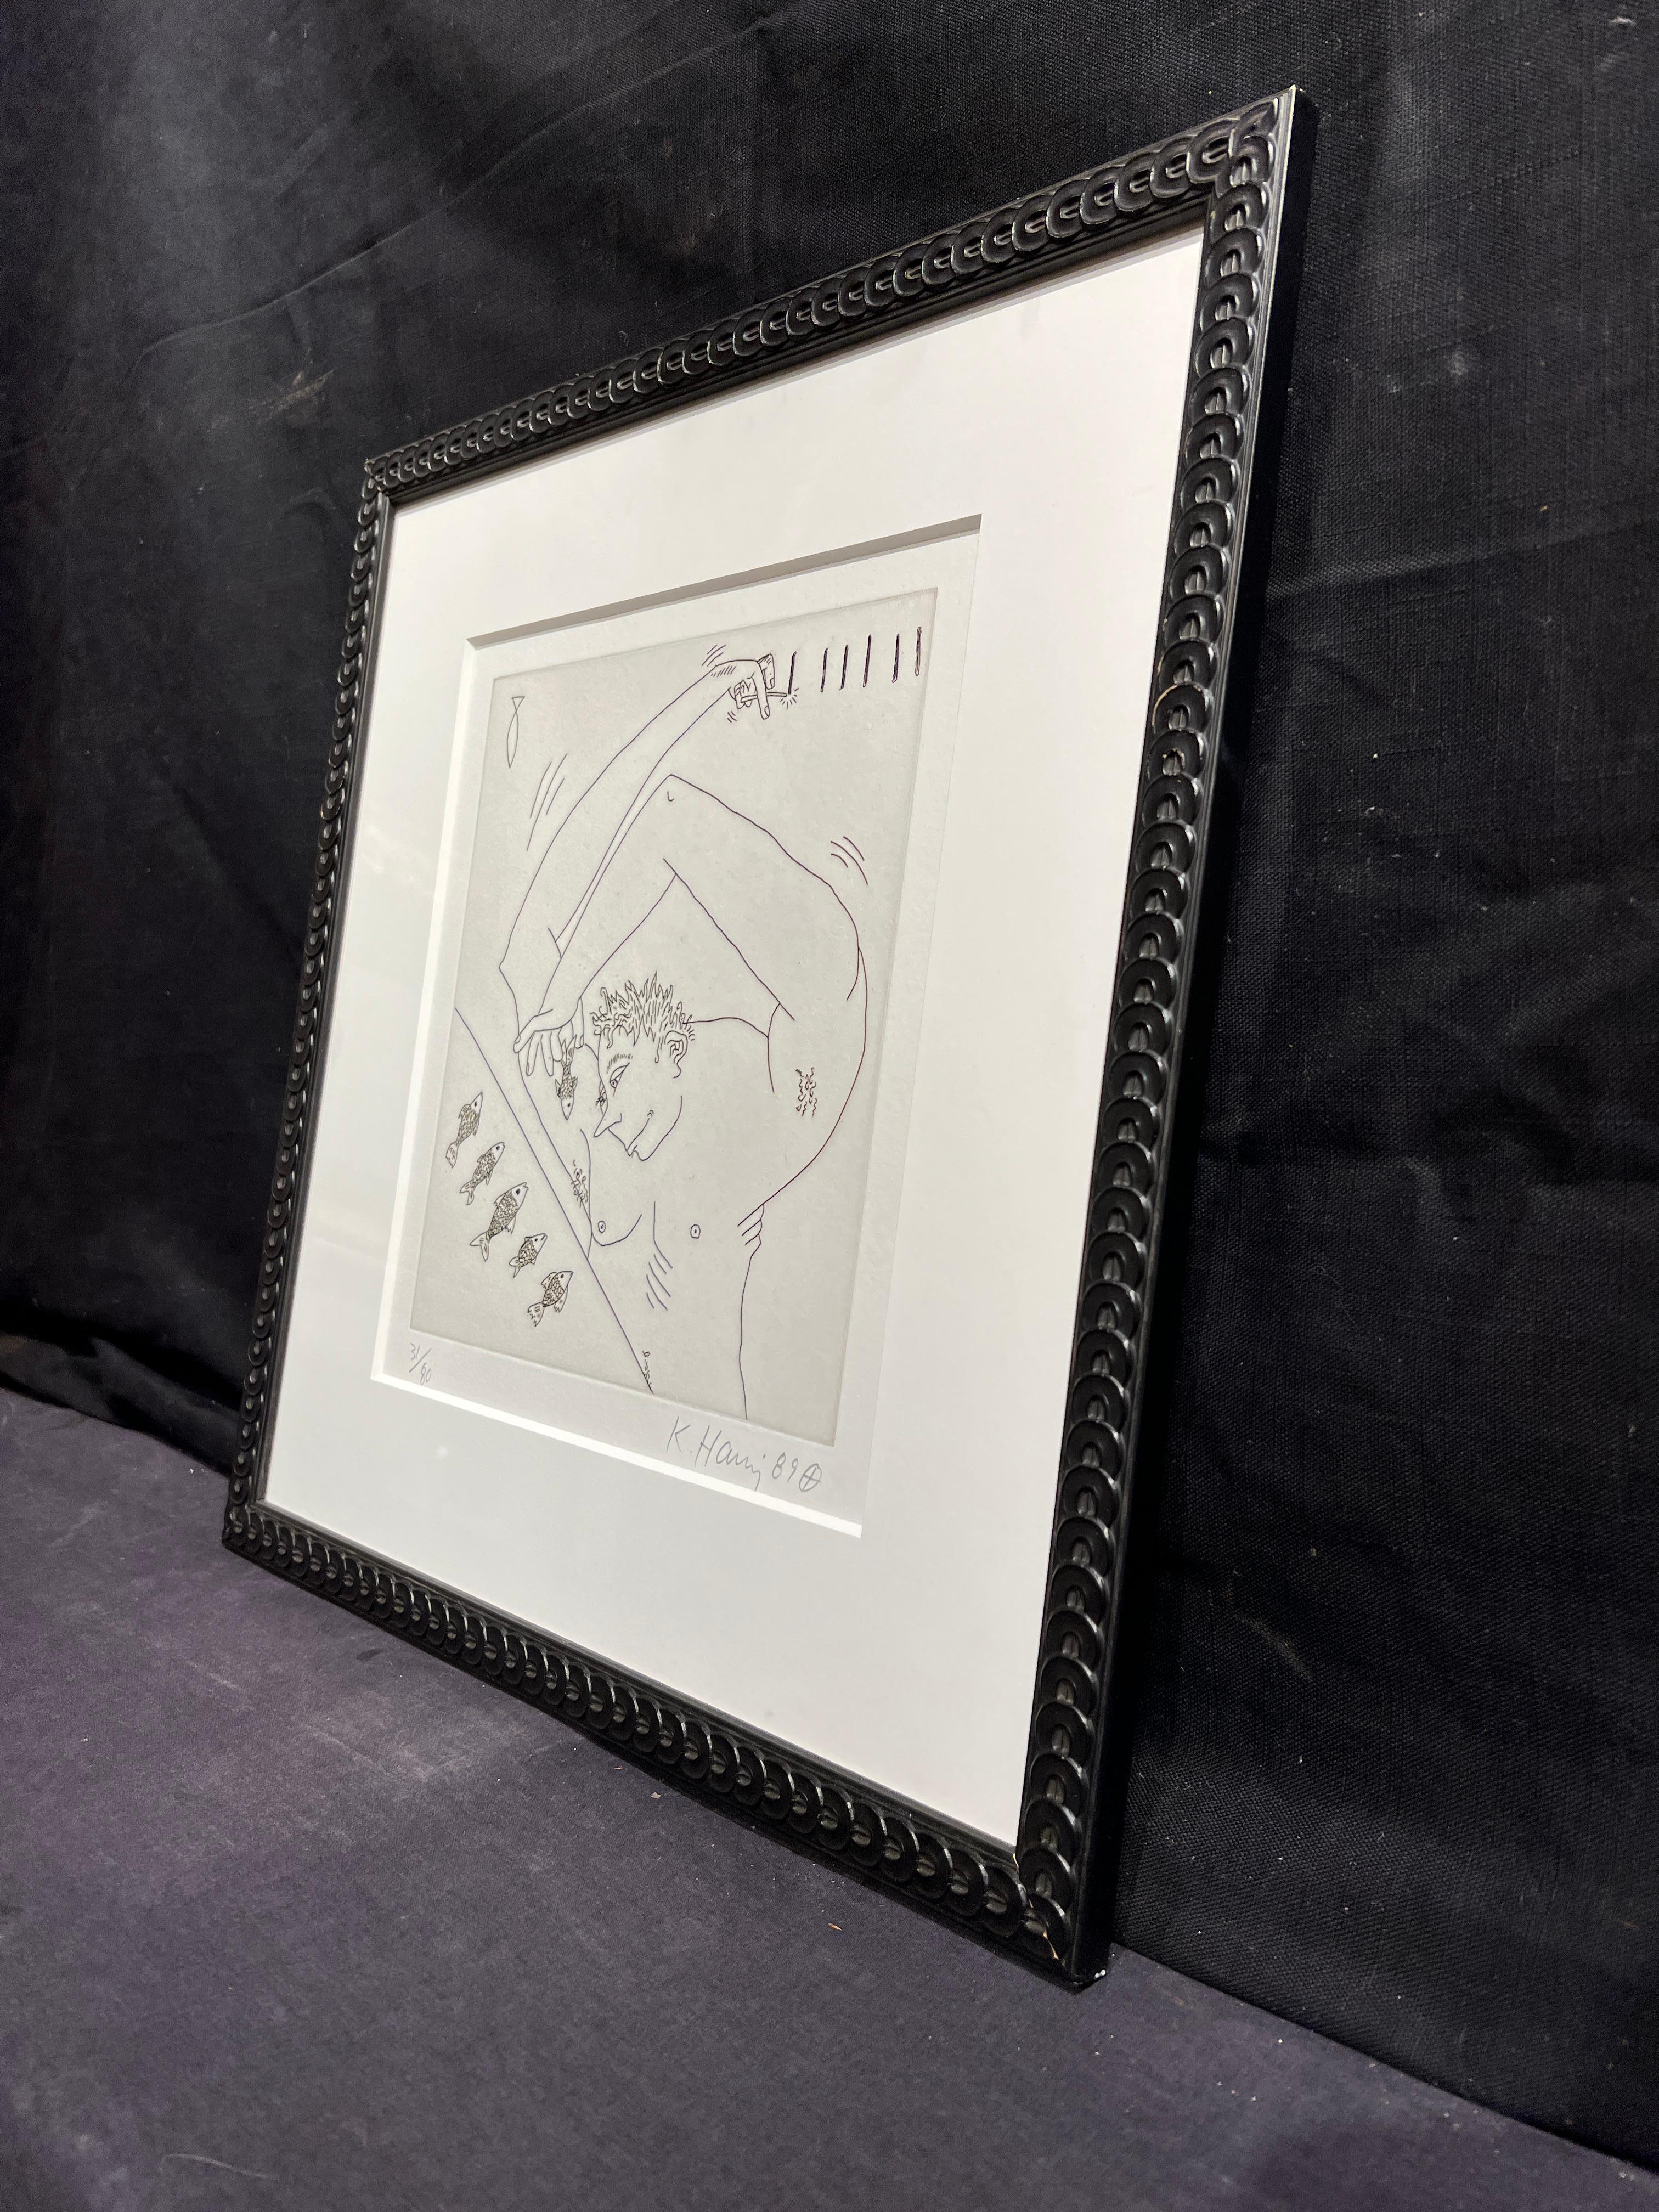 Figur und Fisch (aus The Valley Suite), 1989 von Keith Haring (1958-1990)
Ohne Rahmen: 10